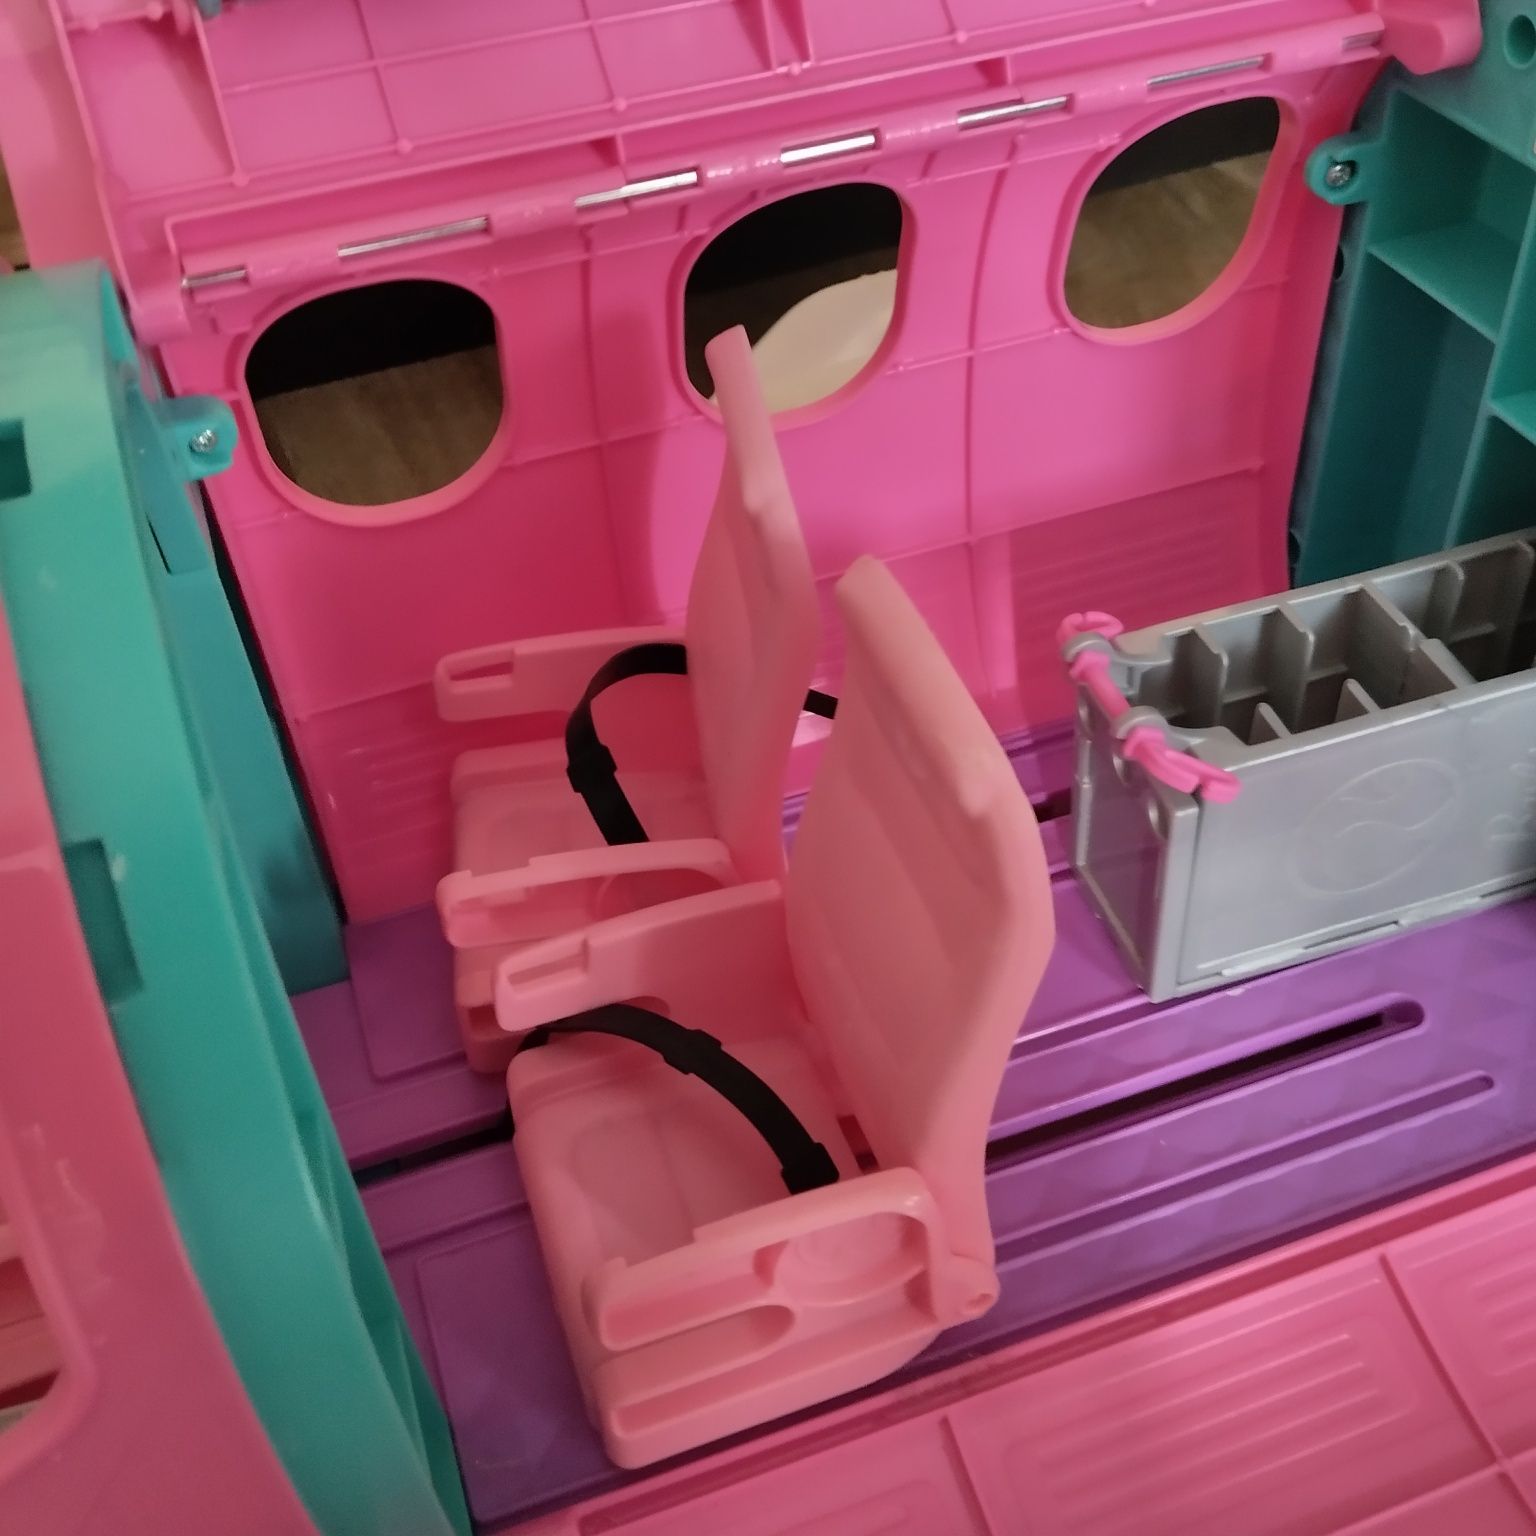 Samolot różowy Barbie